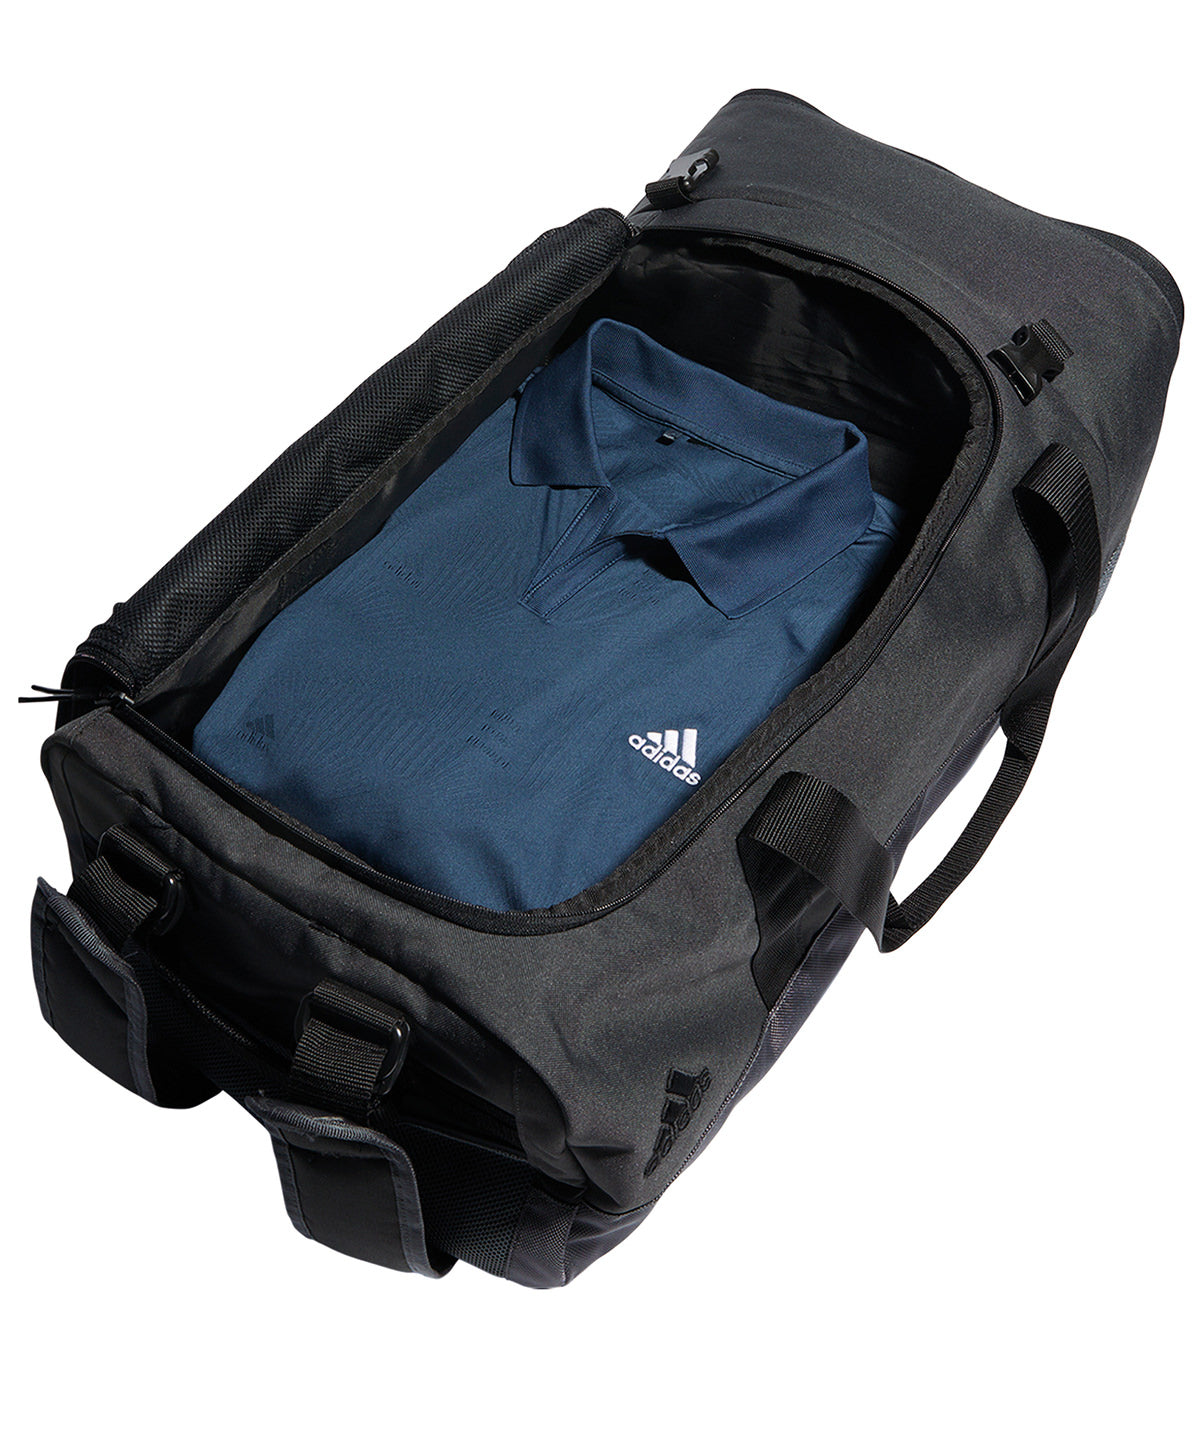 Adidas Golf Duffle Bag